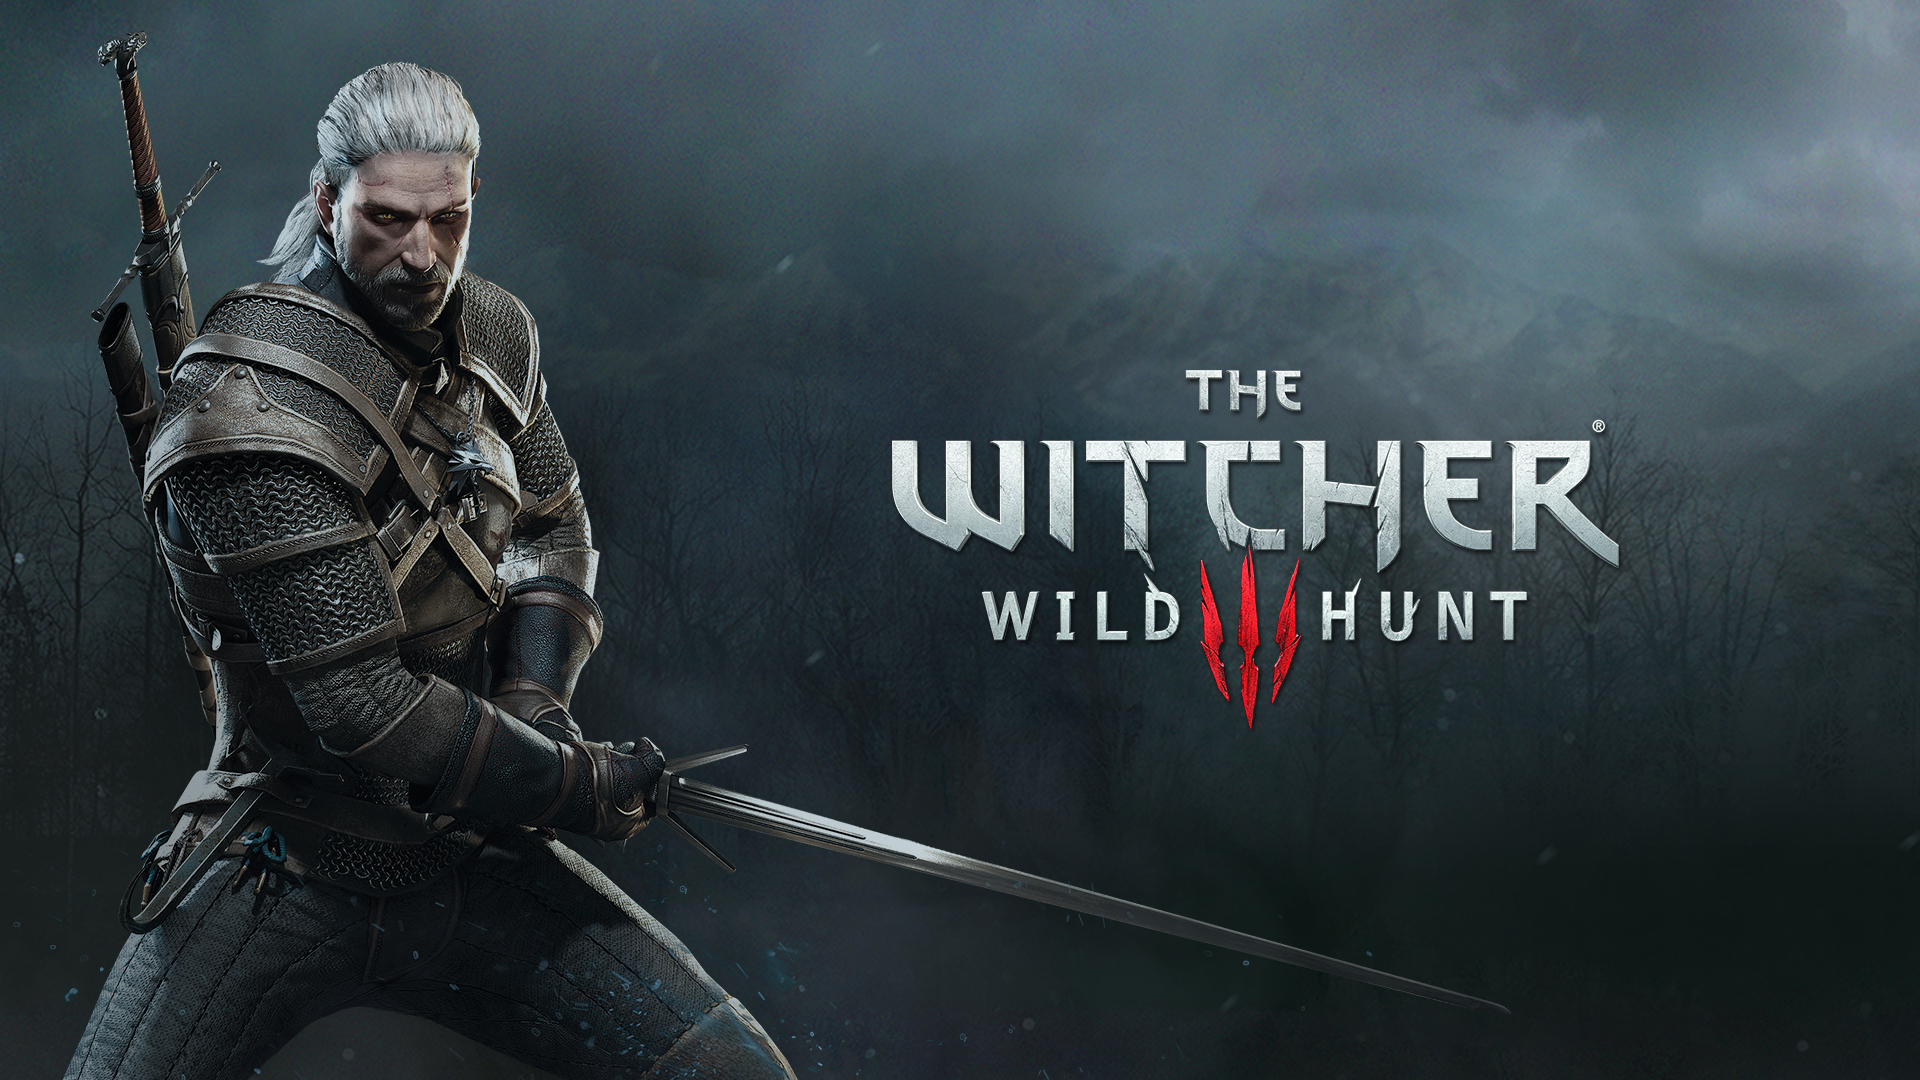 The Witcher 3: Wild Hunt Complete Edition สำหรับ Nintendo Switch จะบรรจุลงตลับเกมถึง 32 GB เเละไม่ต้องดาวน์โหลดอะไรเพิ่มอีก